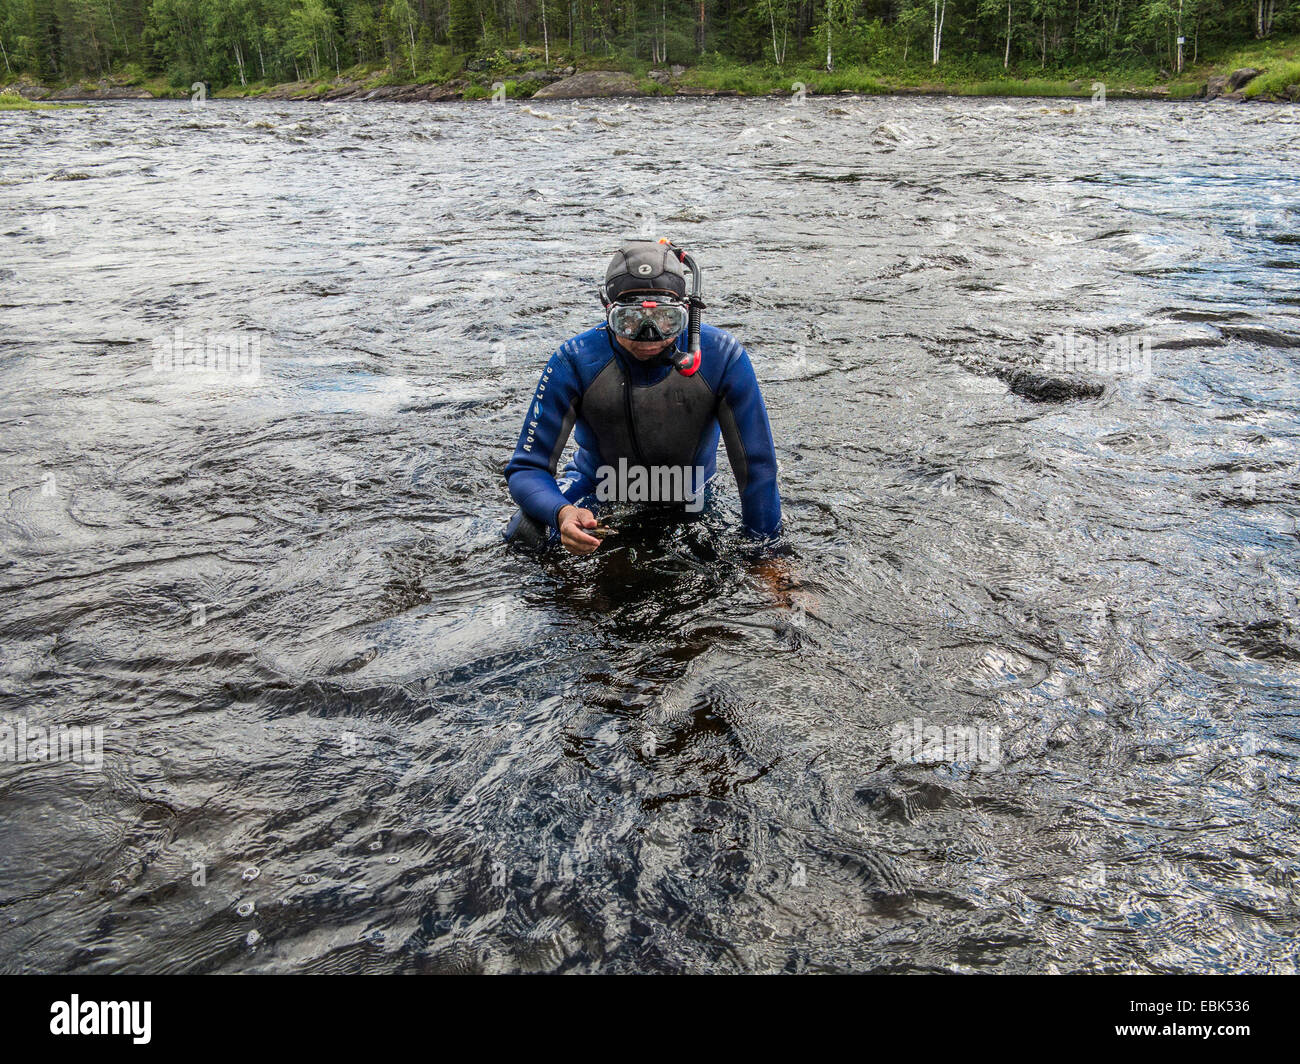 Moule perlière d'eau douce (moule perlière écossais), l'est pearlshell (Margaritifera margaritifera), plongeur quitte une rivière avec un modèle à la main, la Russie, l'Karelien, Keret river Banque D'Images